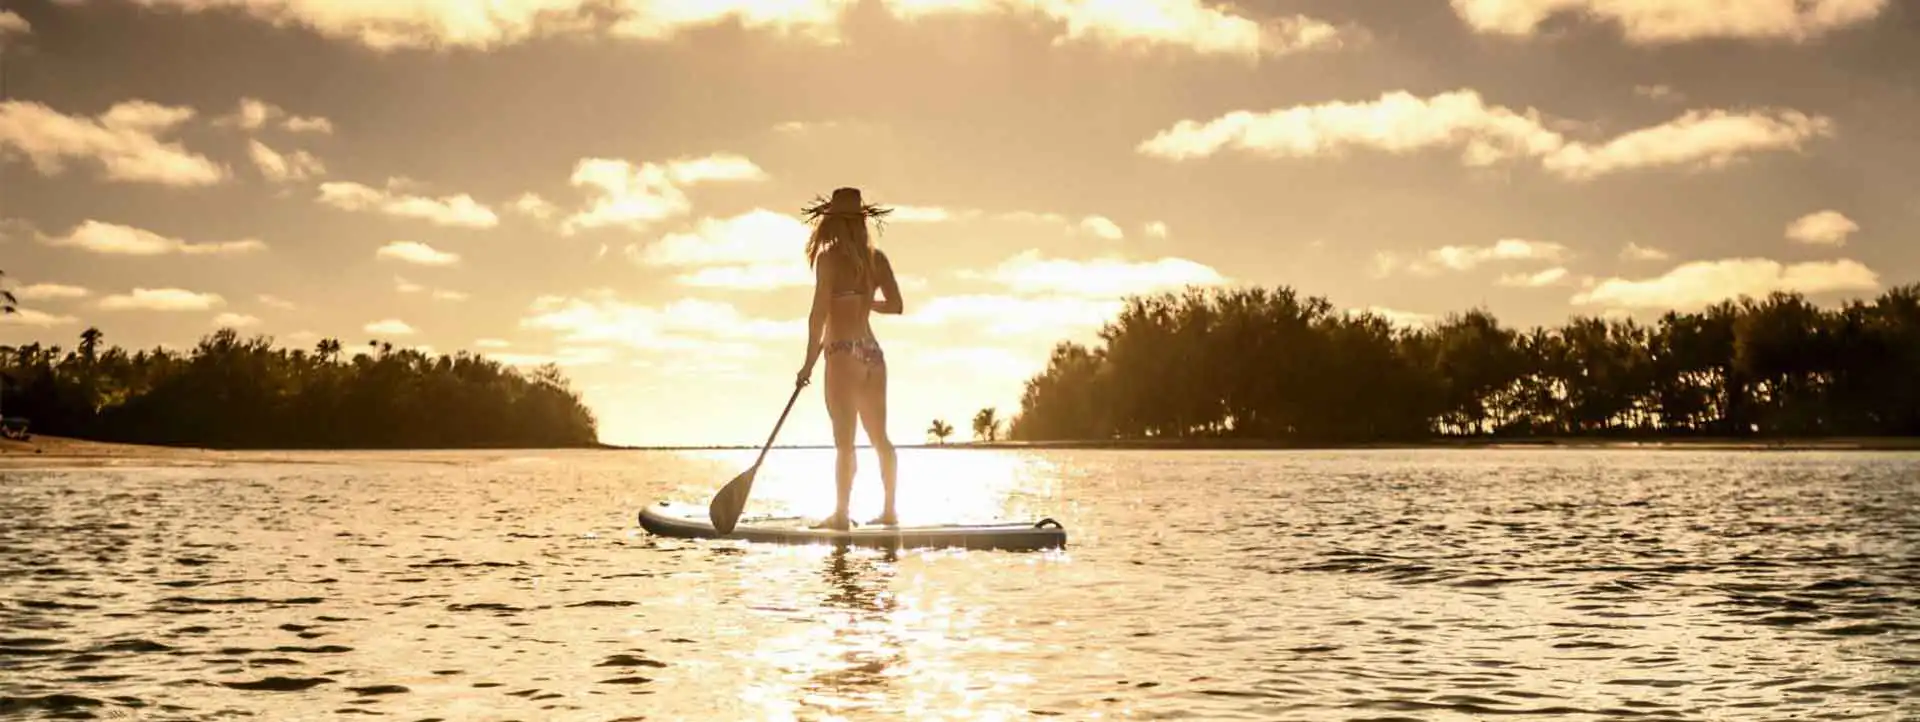 PACIFIC-RAROTONGA-RESORT-paddleboard-at-dusk-lagoon lady